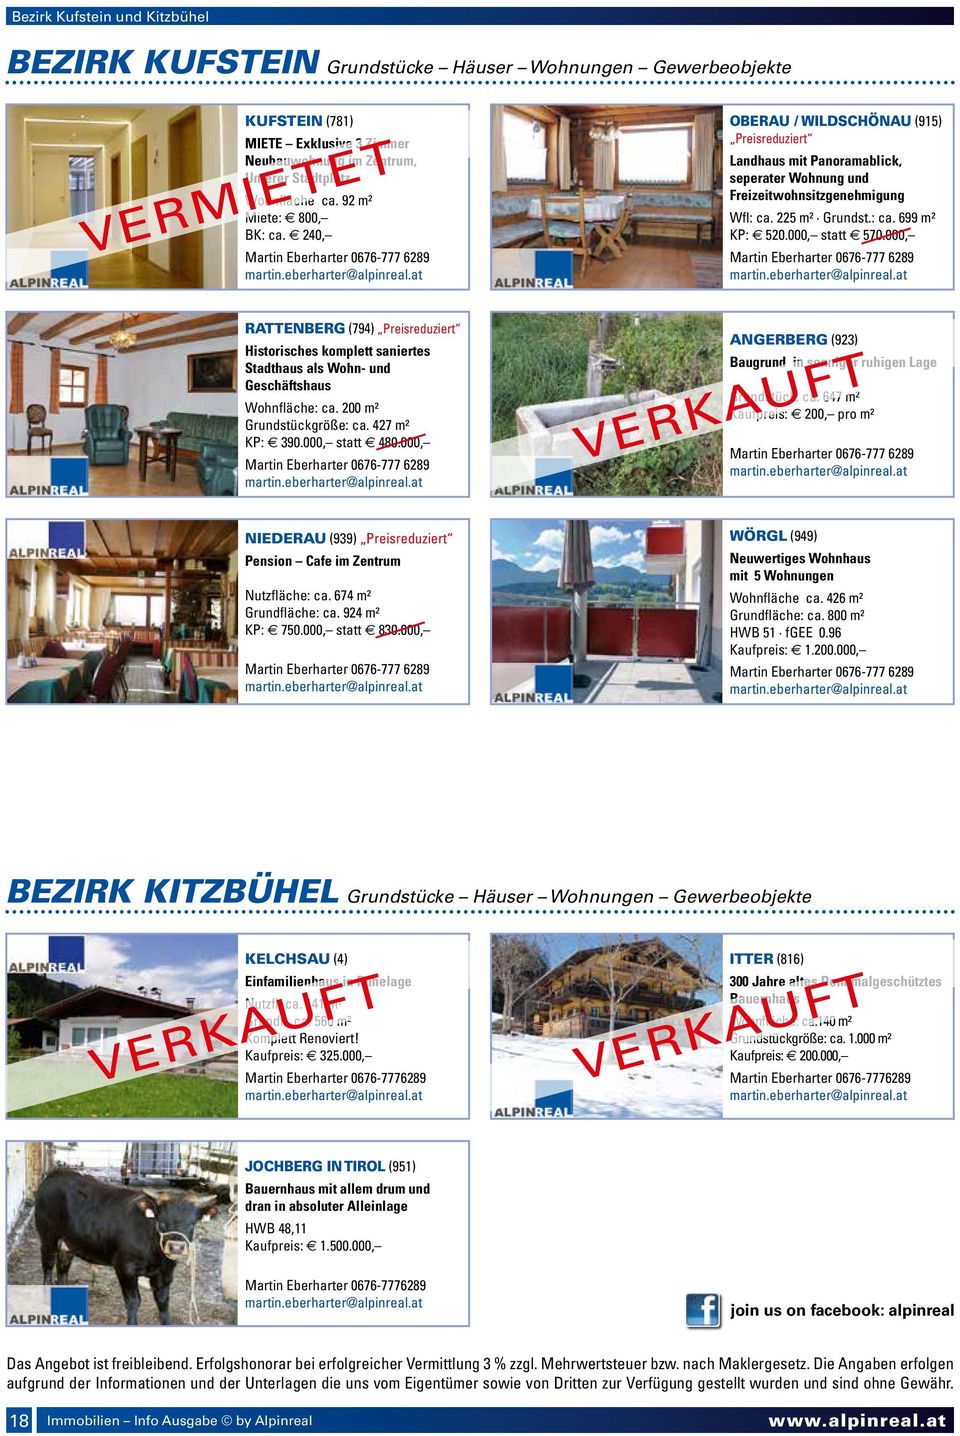 240, Martin Eberharter 0676-777 6289 vermietet Oberau / Wildschönau (915) Preisreduziert Landhaus mit Panoramablick, seperater Wohnung und Freizeitwohnsitzgenehmigung Wfl: ca. 225 m² Grundst.: ca. 699 m² KP: 520.